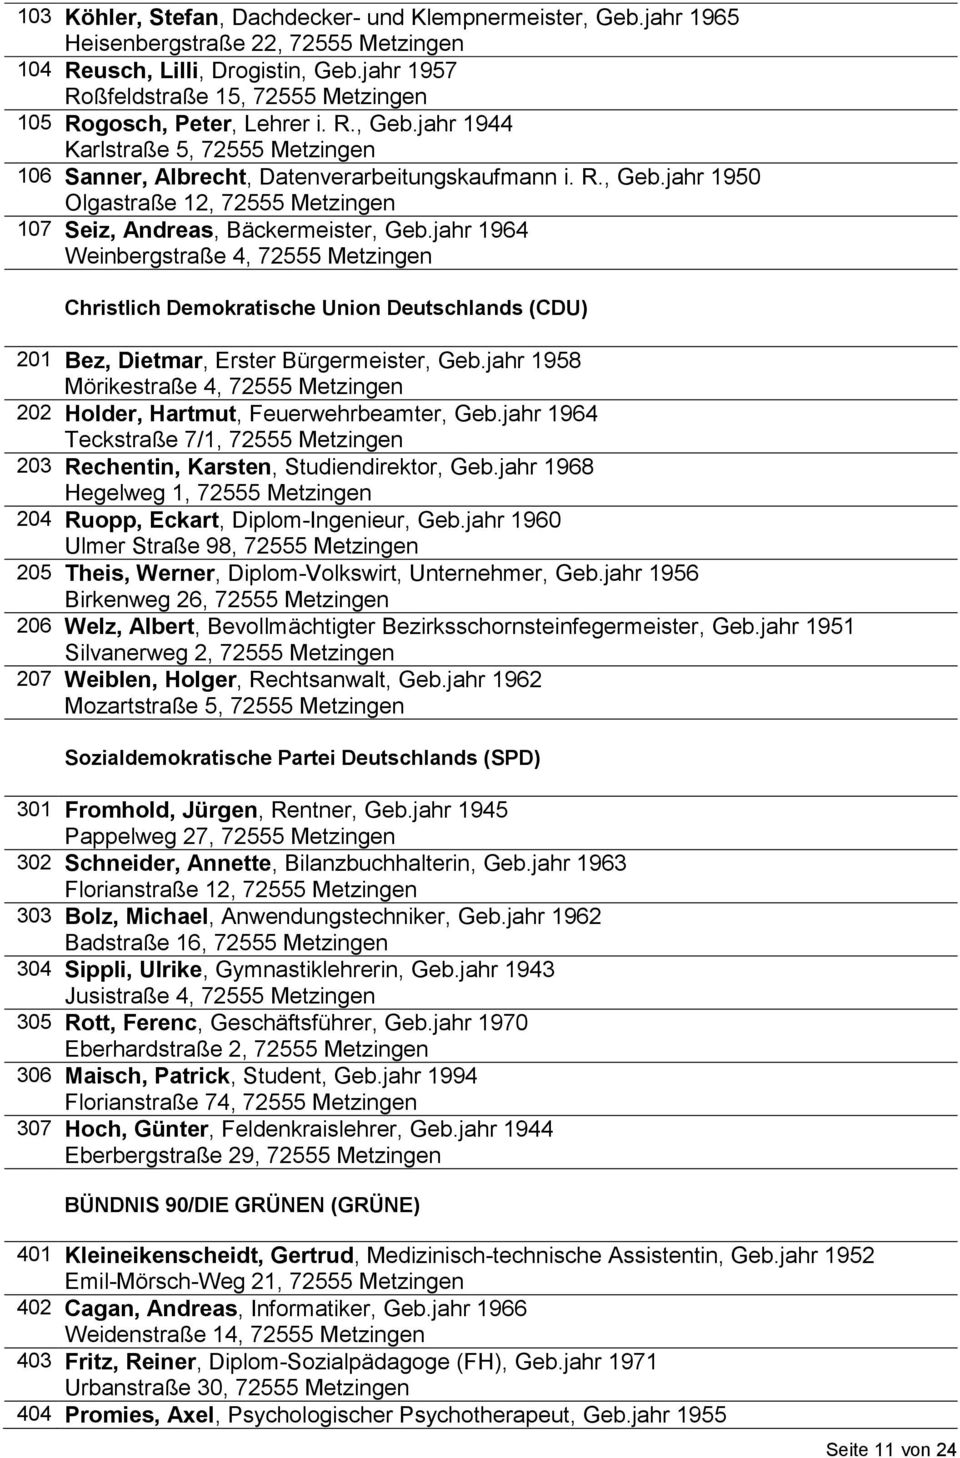 jahr 1964 Weinbergstraße 4, 72555 Metzingen Christlich Demokratische Union Deutschlands (CDU) 201 Bez, Dietmar, Erster Bürgermeister, Geb.